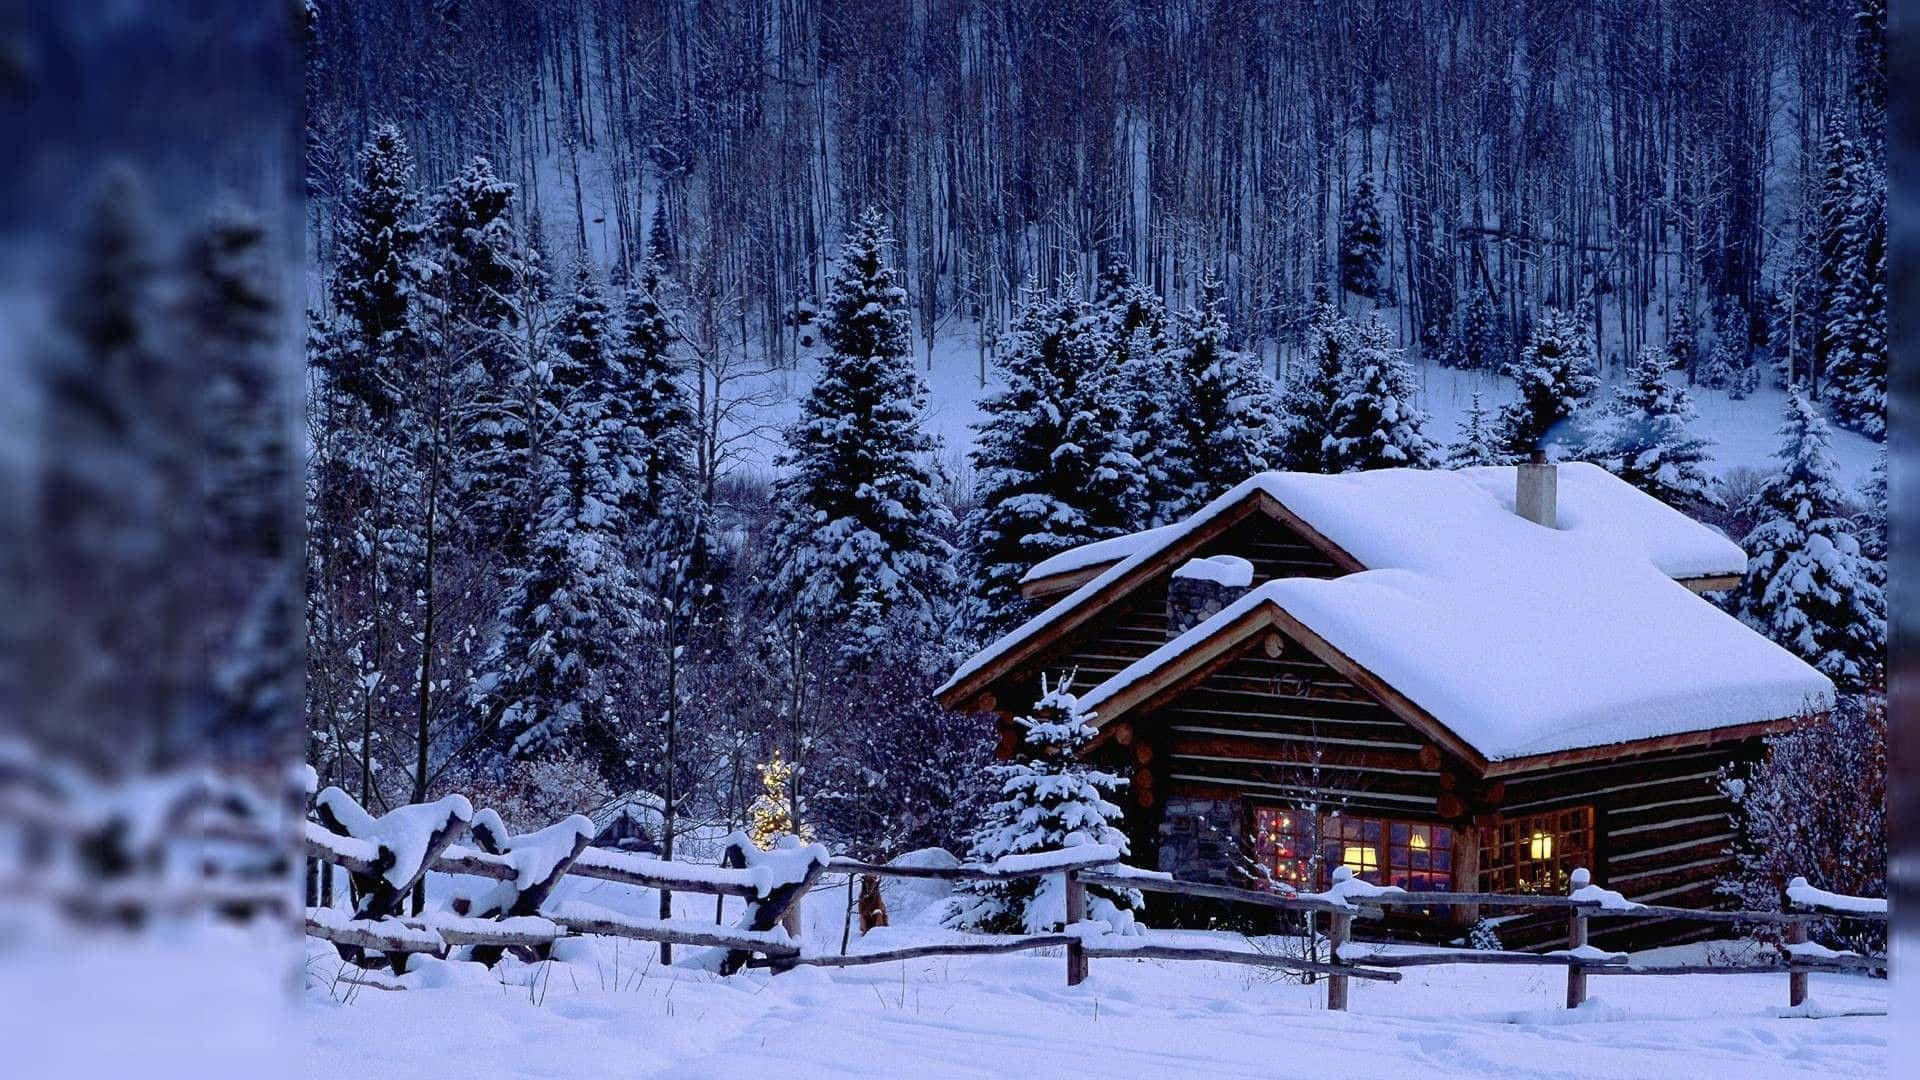 Cabin In Winter Scenery Desktop Wallpaper